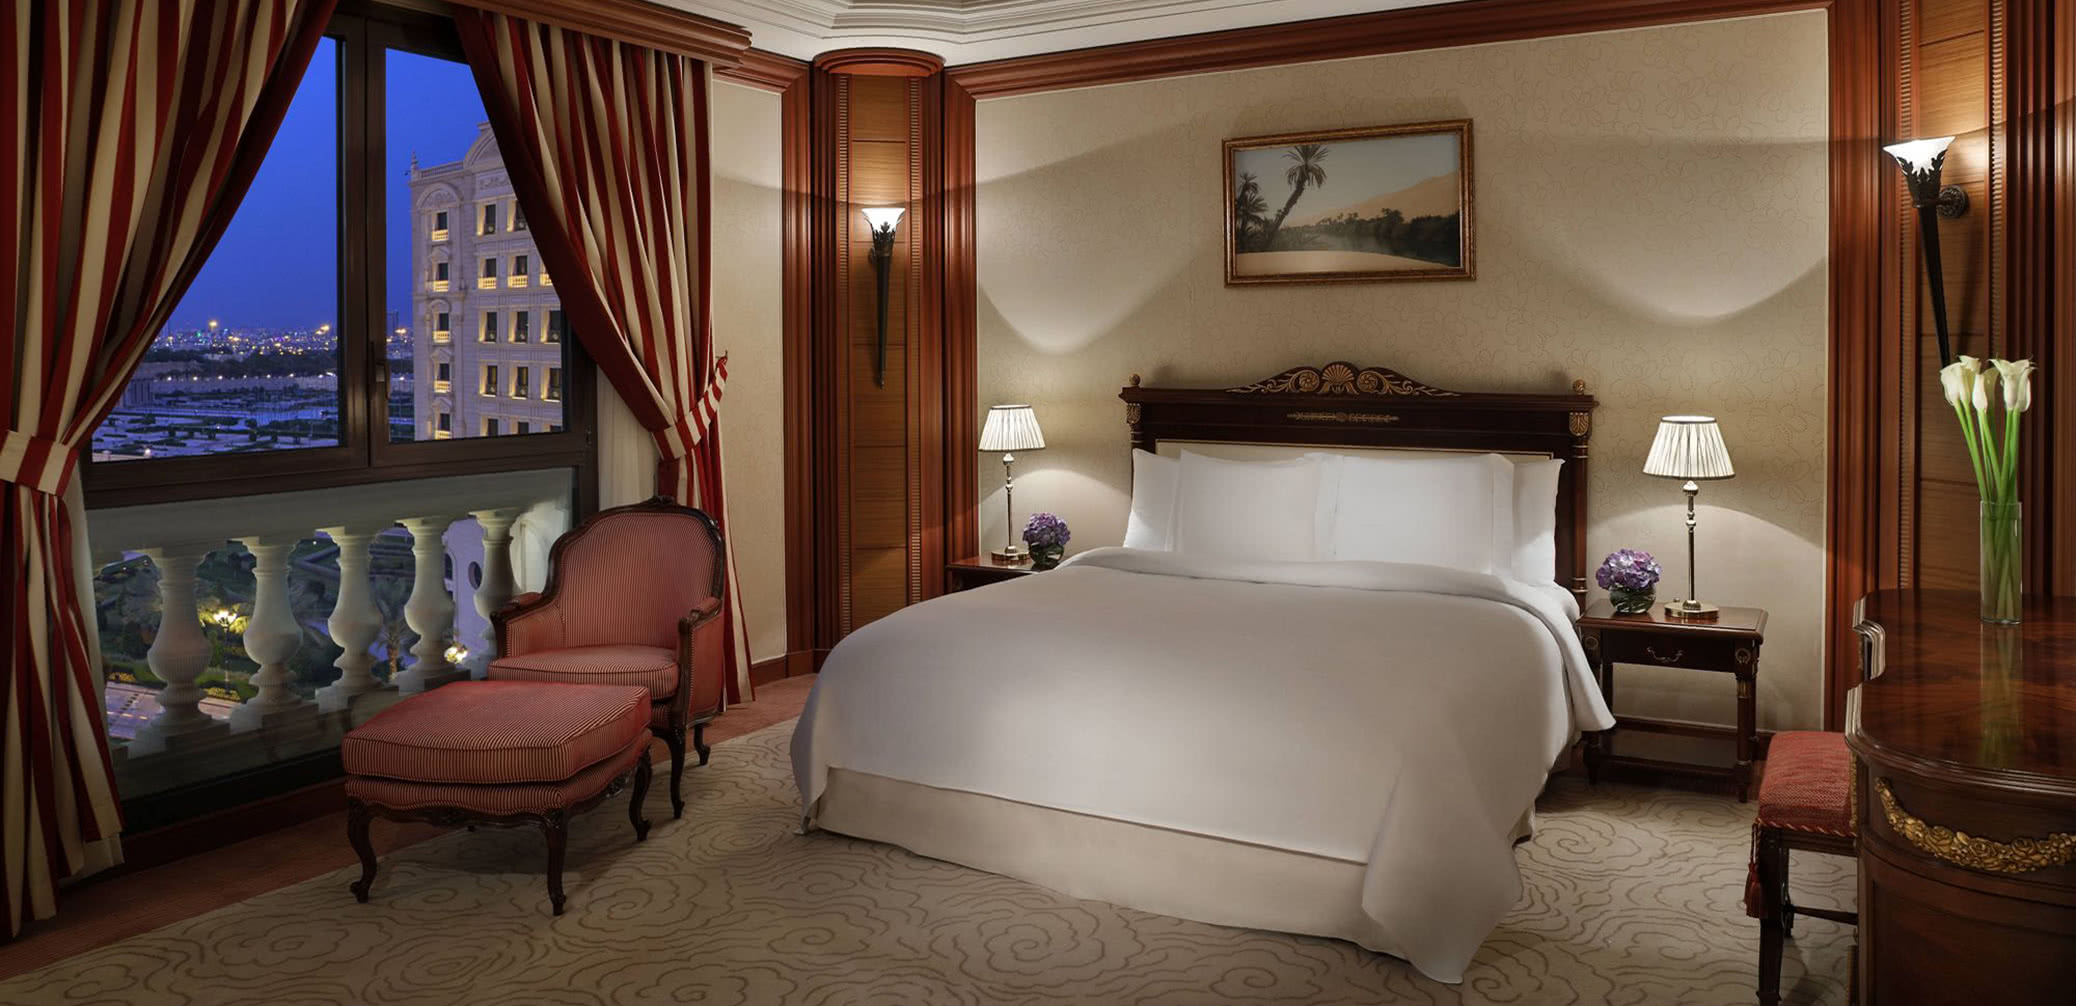 Best Hotel Executive Club Lounges In Riyadh, Al Khobar & Jeddah, Saudi Arabia